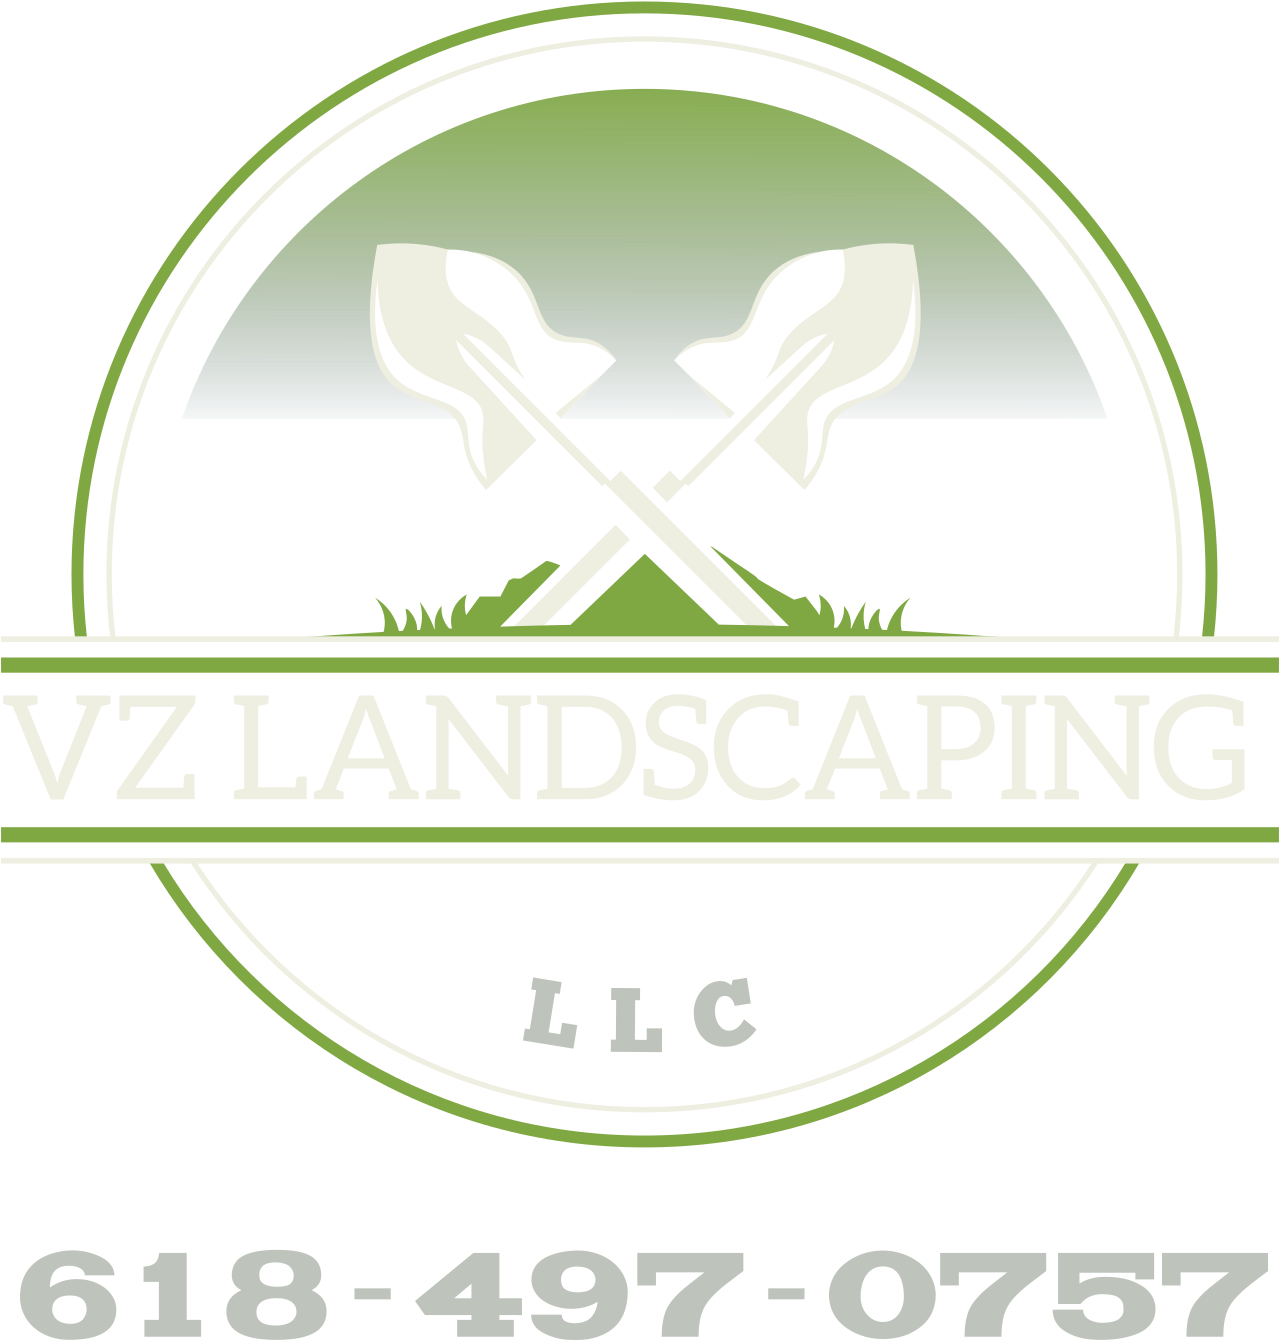 VZ Landscaping 's logo